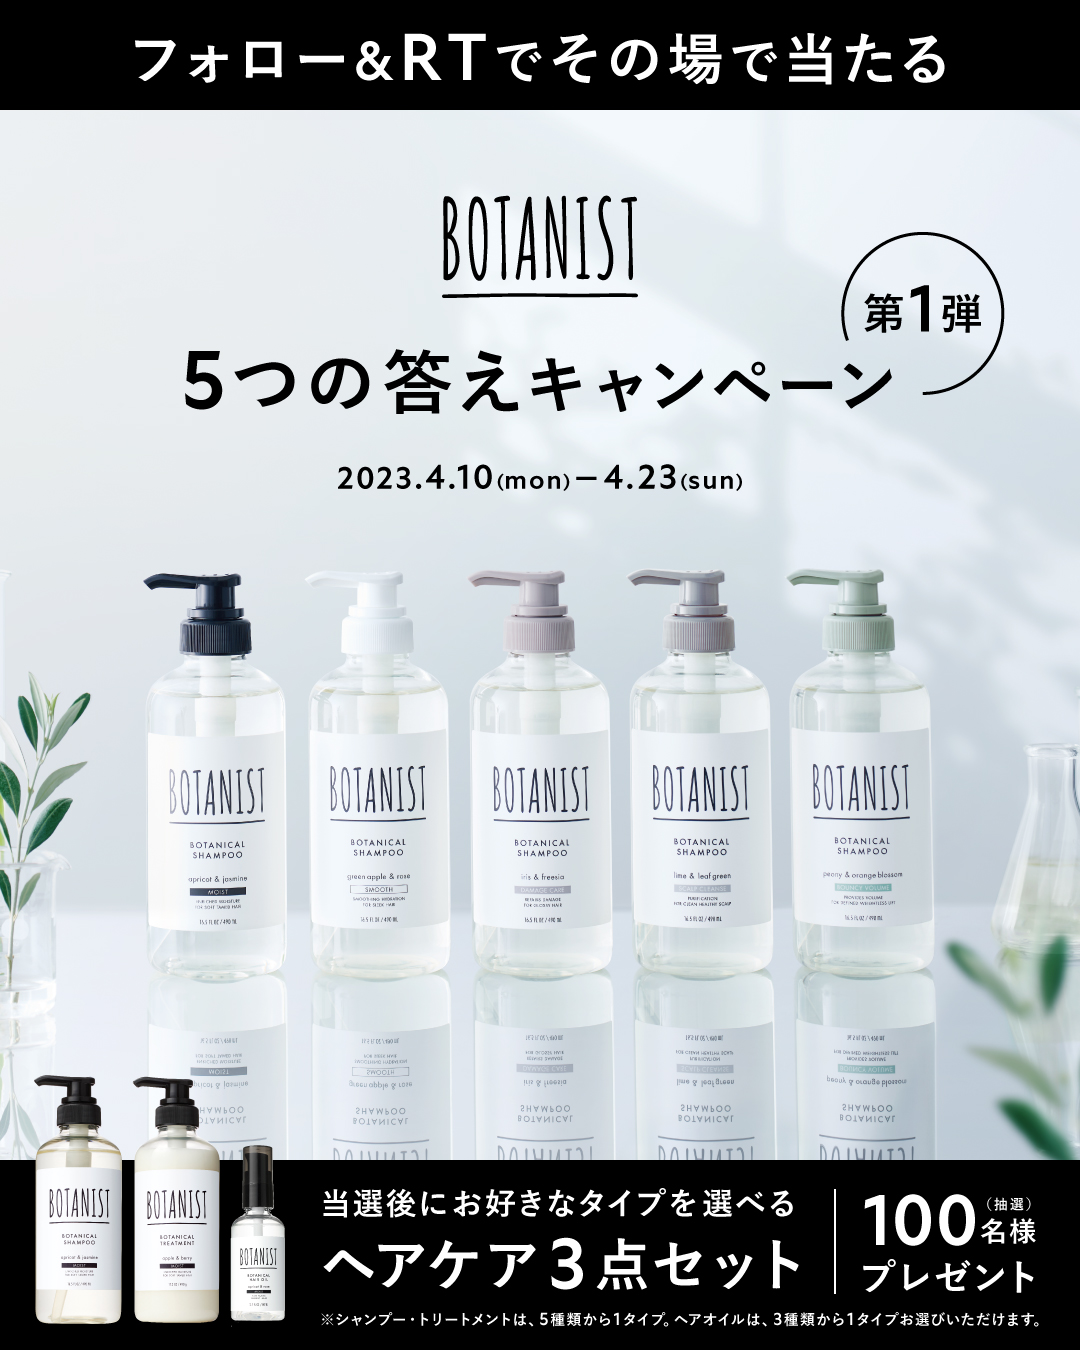 BOTANIST's shinseikatsu "5 Answers Campaign"